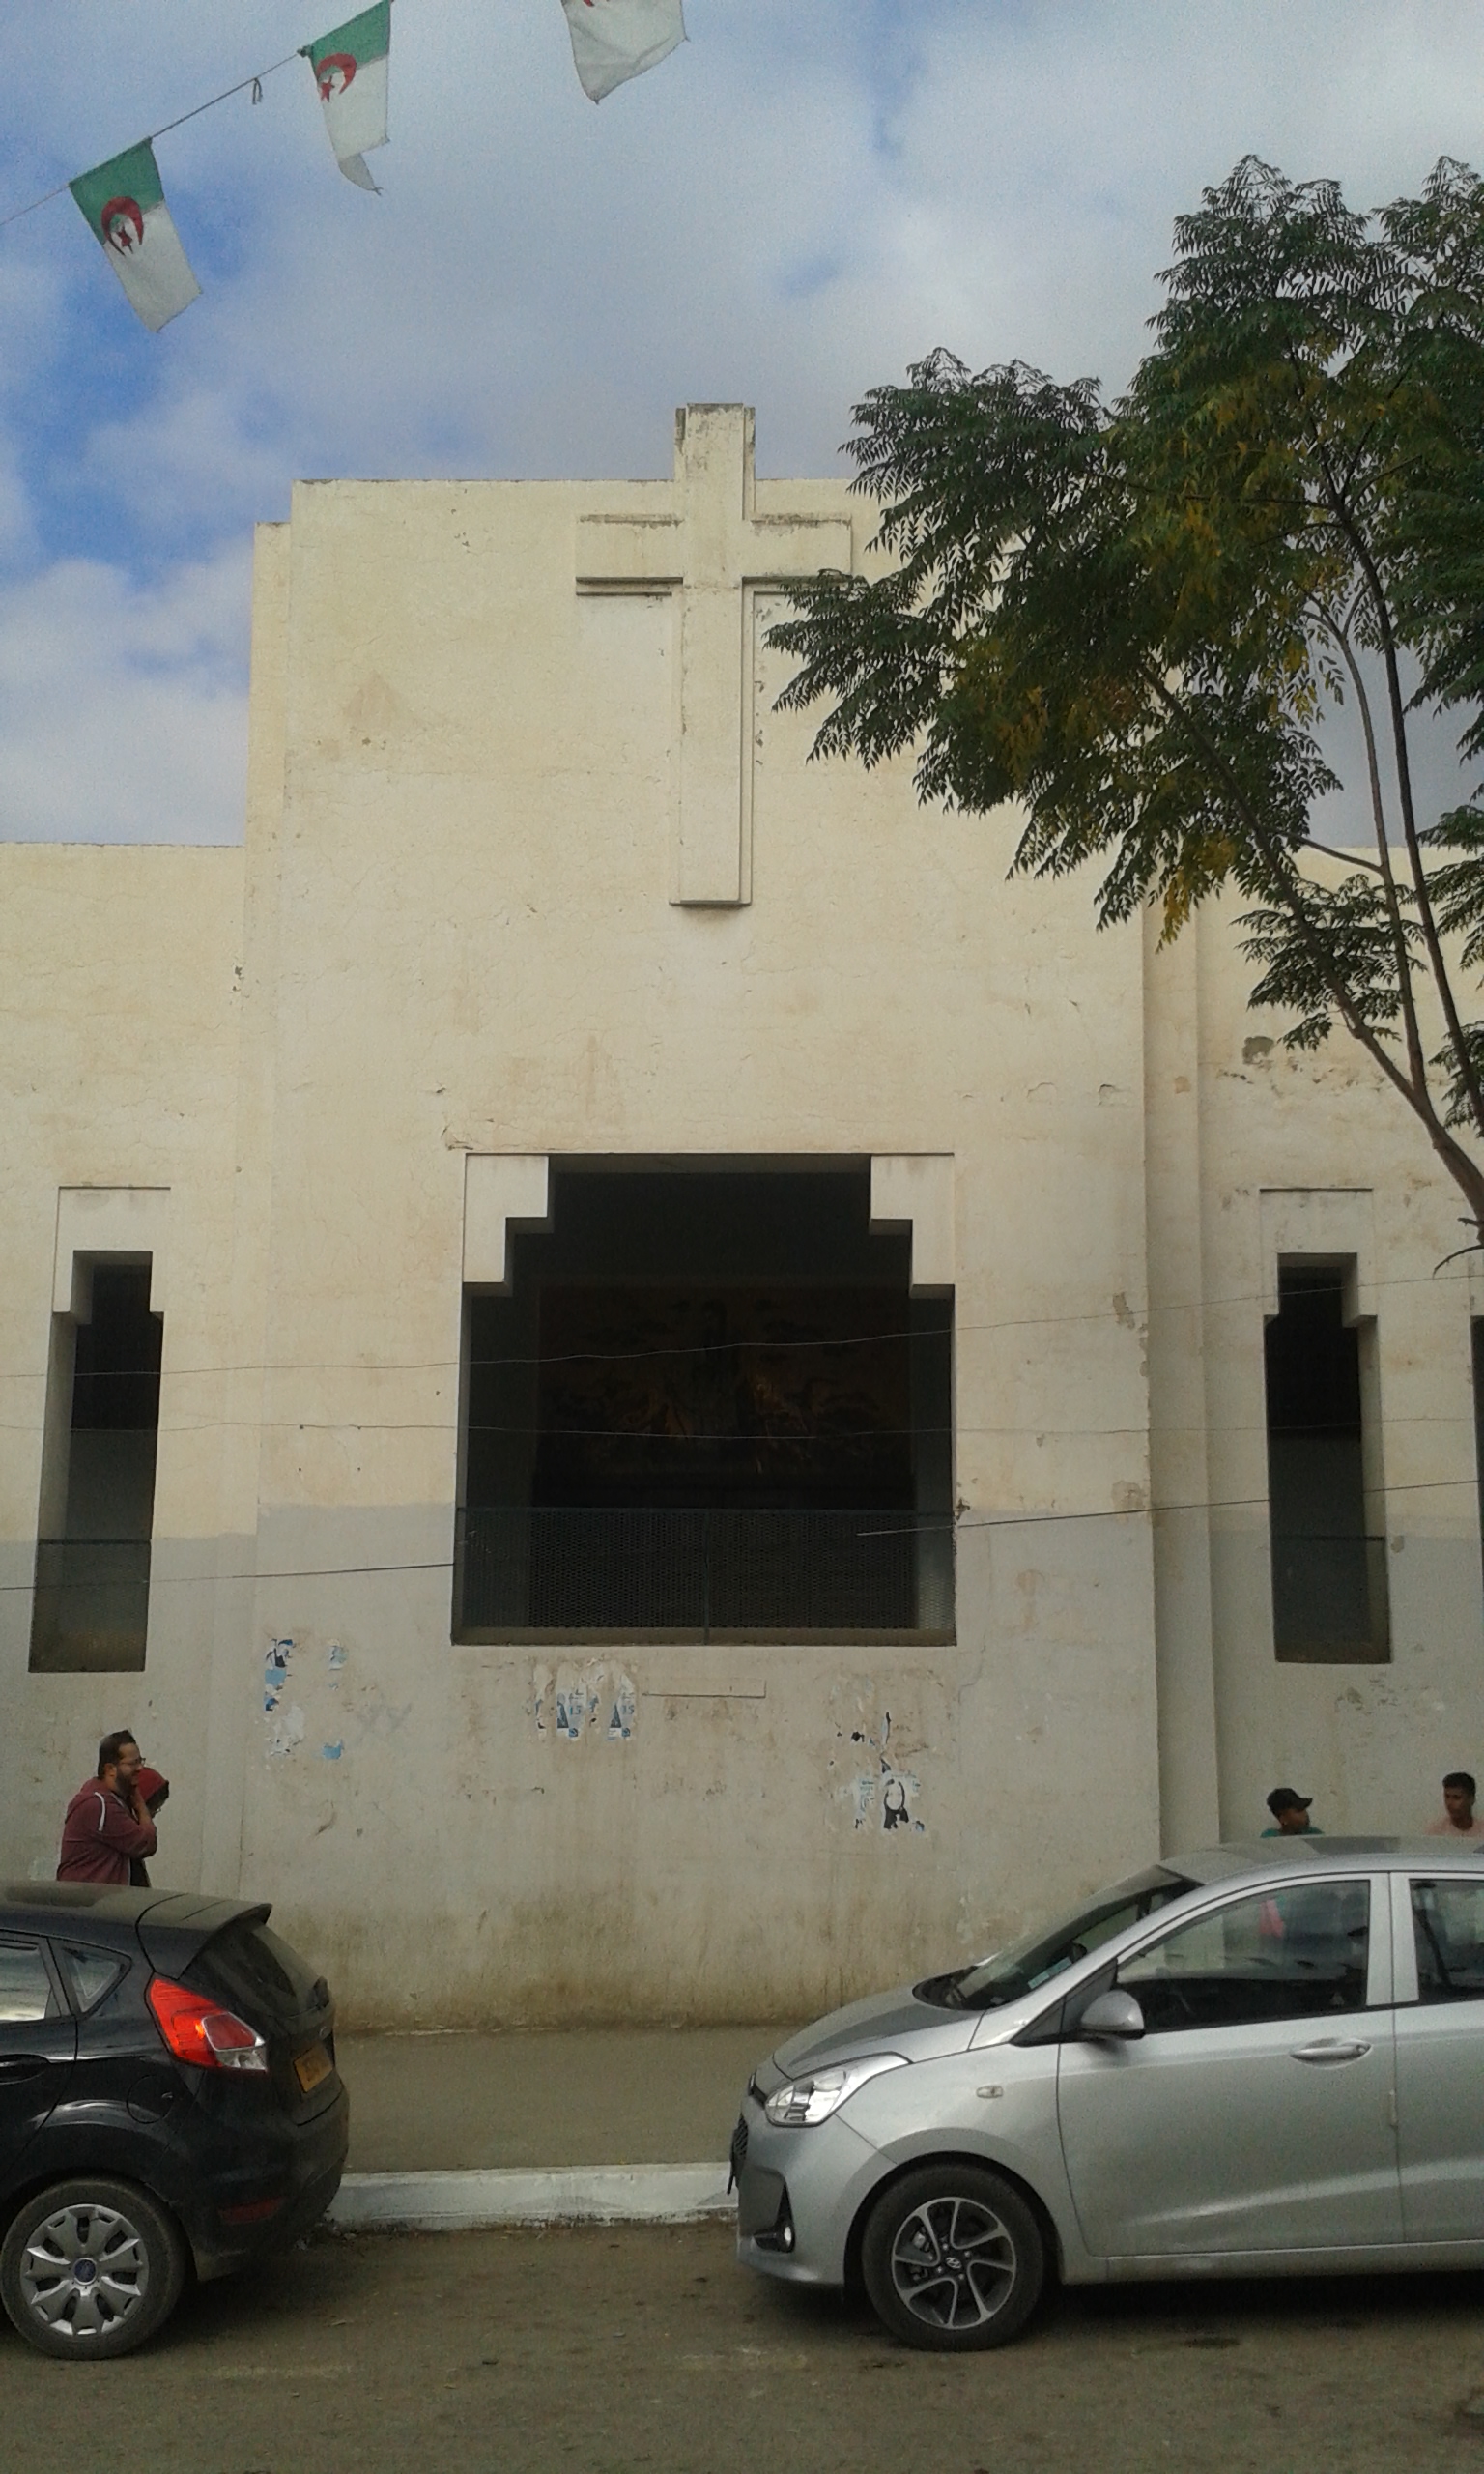 الكنيسة البروتستانتية ما زالت قائمة إلى اليوم ولكنها مغلقة - في مدينة البليدة - الجزائر. Kirche Blida ist eine Großstadt im Norden Algeriens FOTO BRAHIM MECHARA